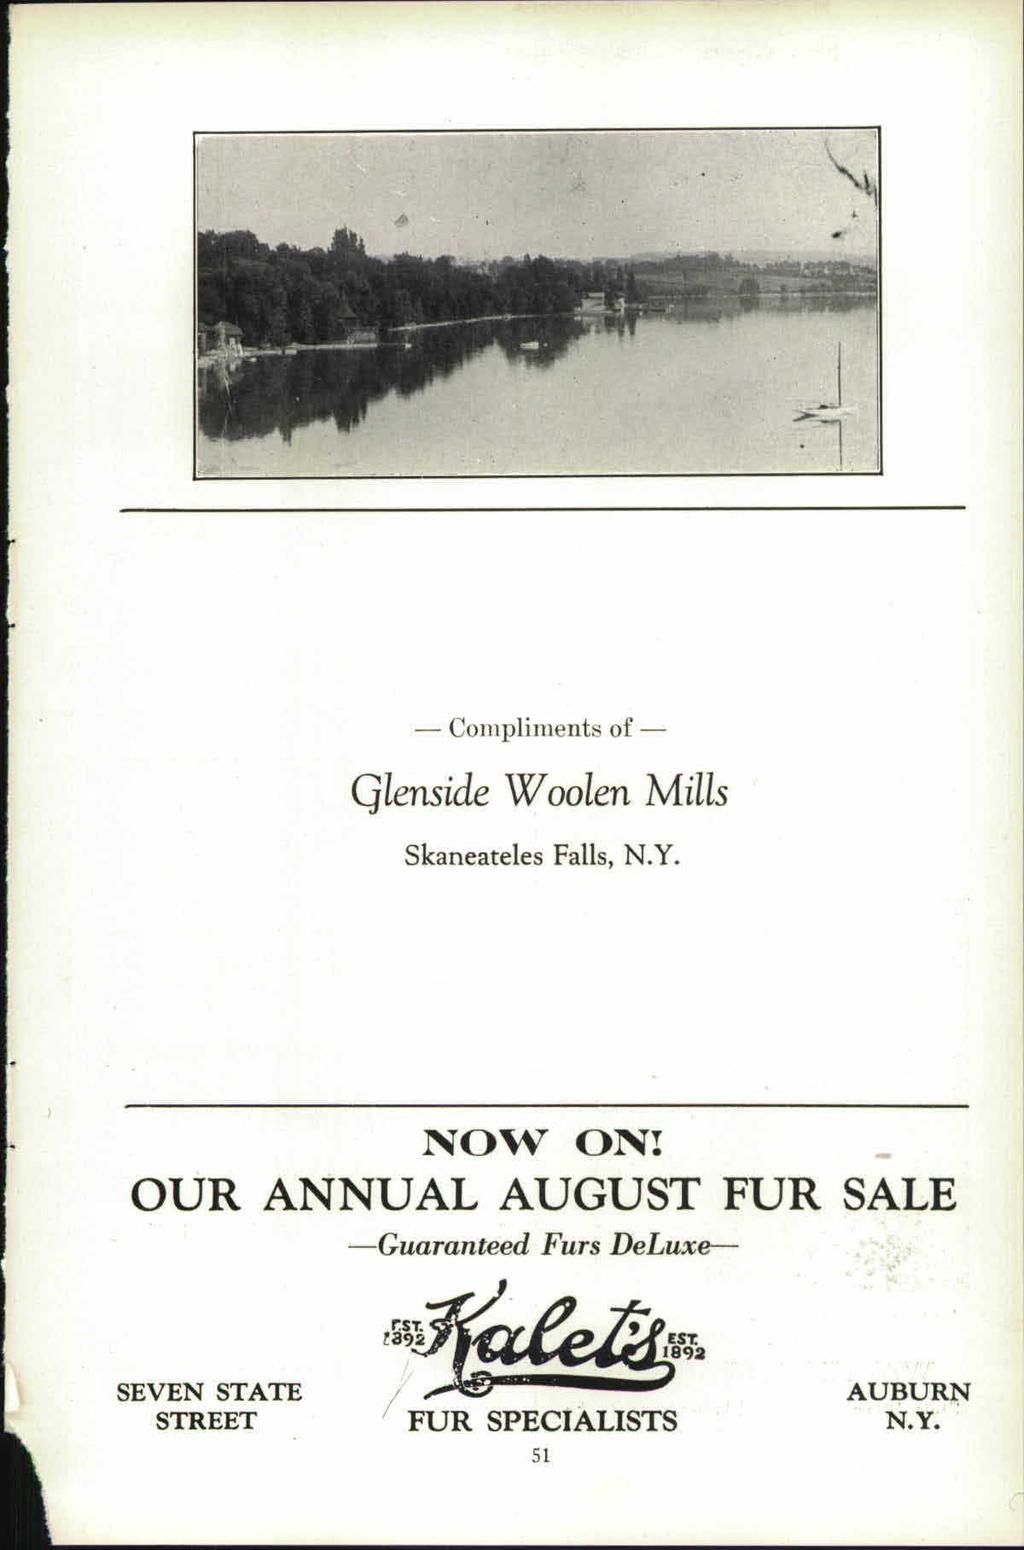 Compliments of Qlenside Woolen Mills Skaneateles Falls, N.Y.